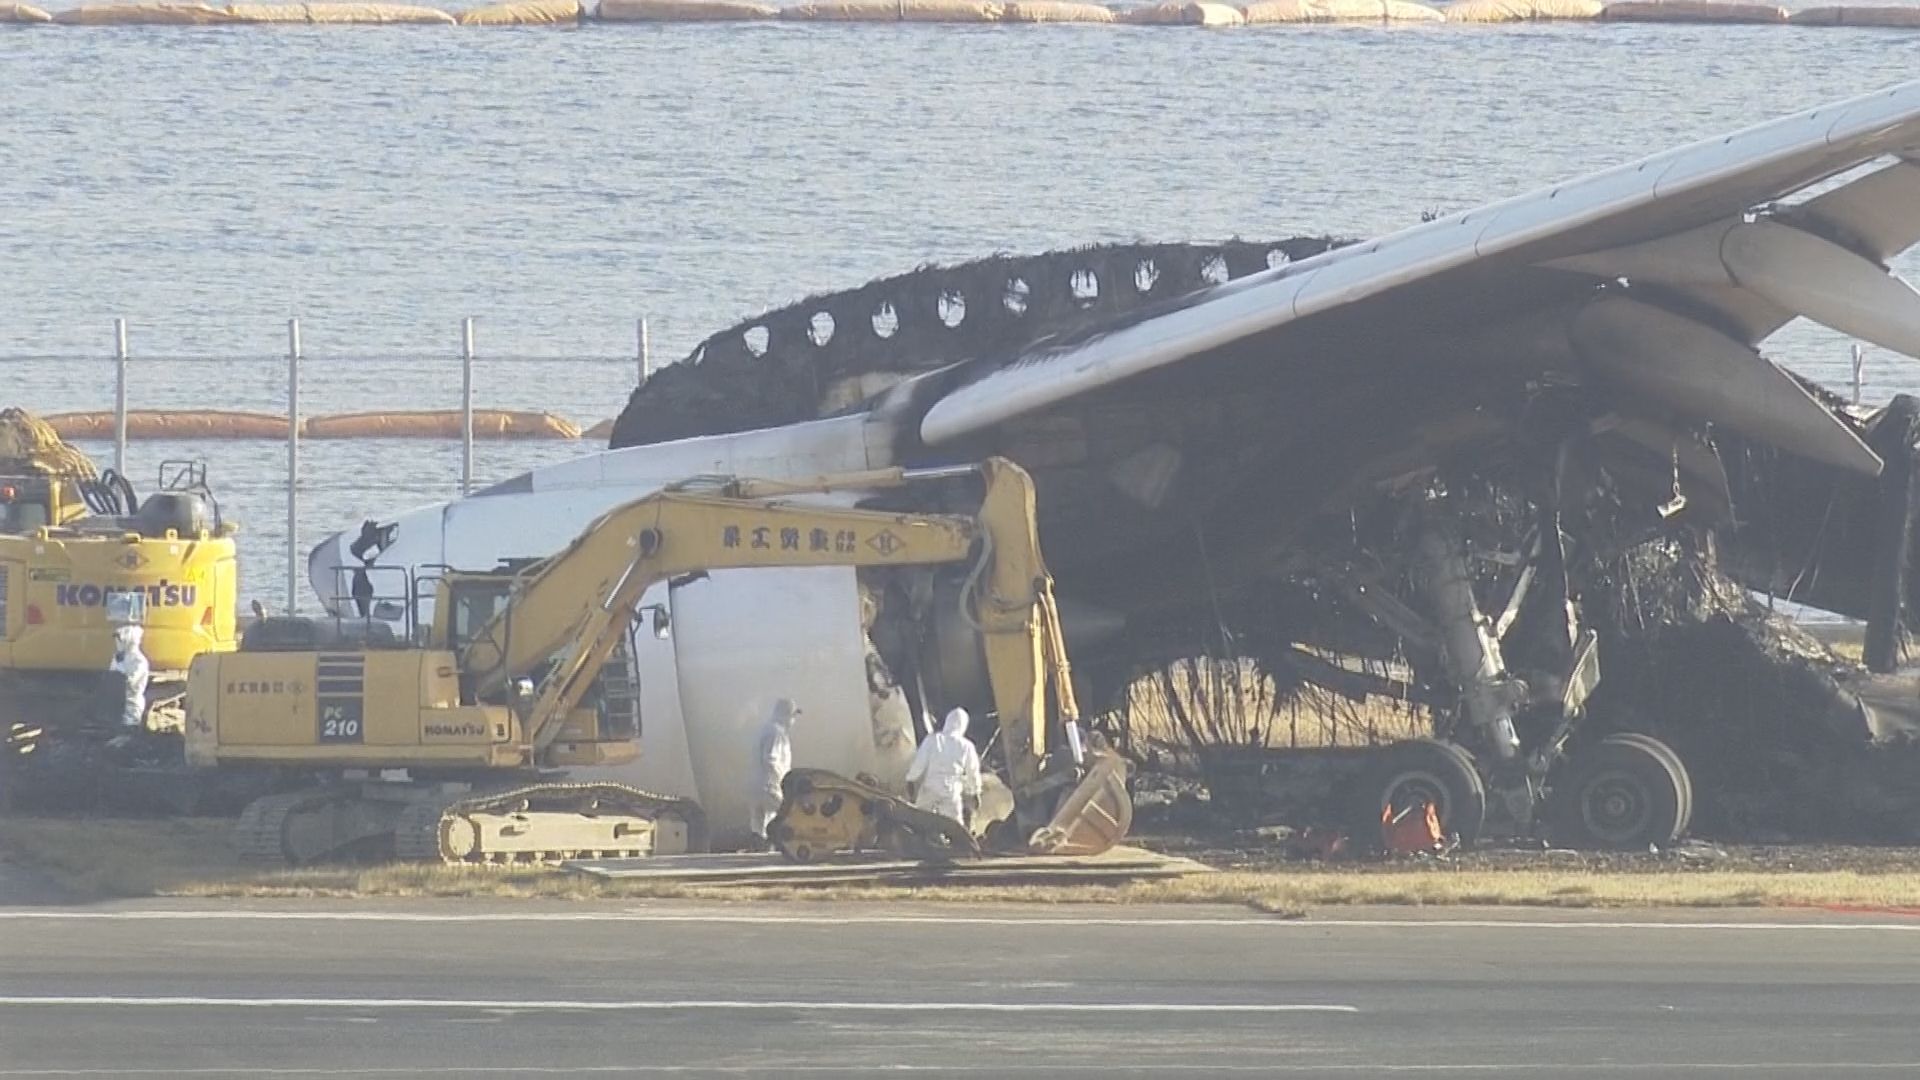 JAL機の撤去作業が始まる 「7日までに終わらせたい」と日本航空 羽田空港の航空機衝突事故